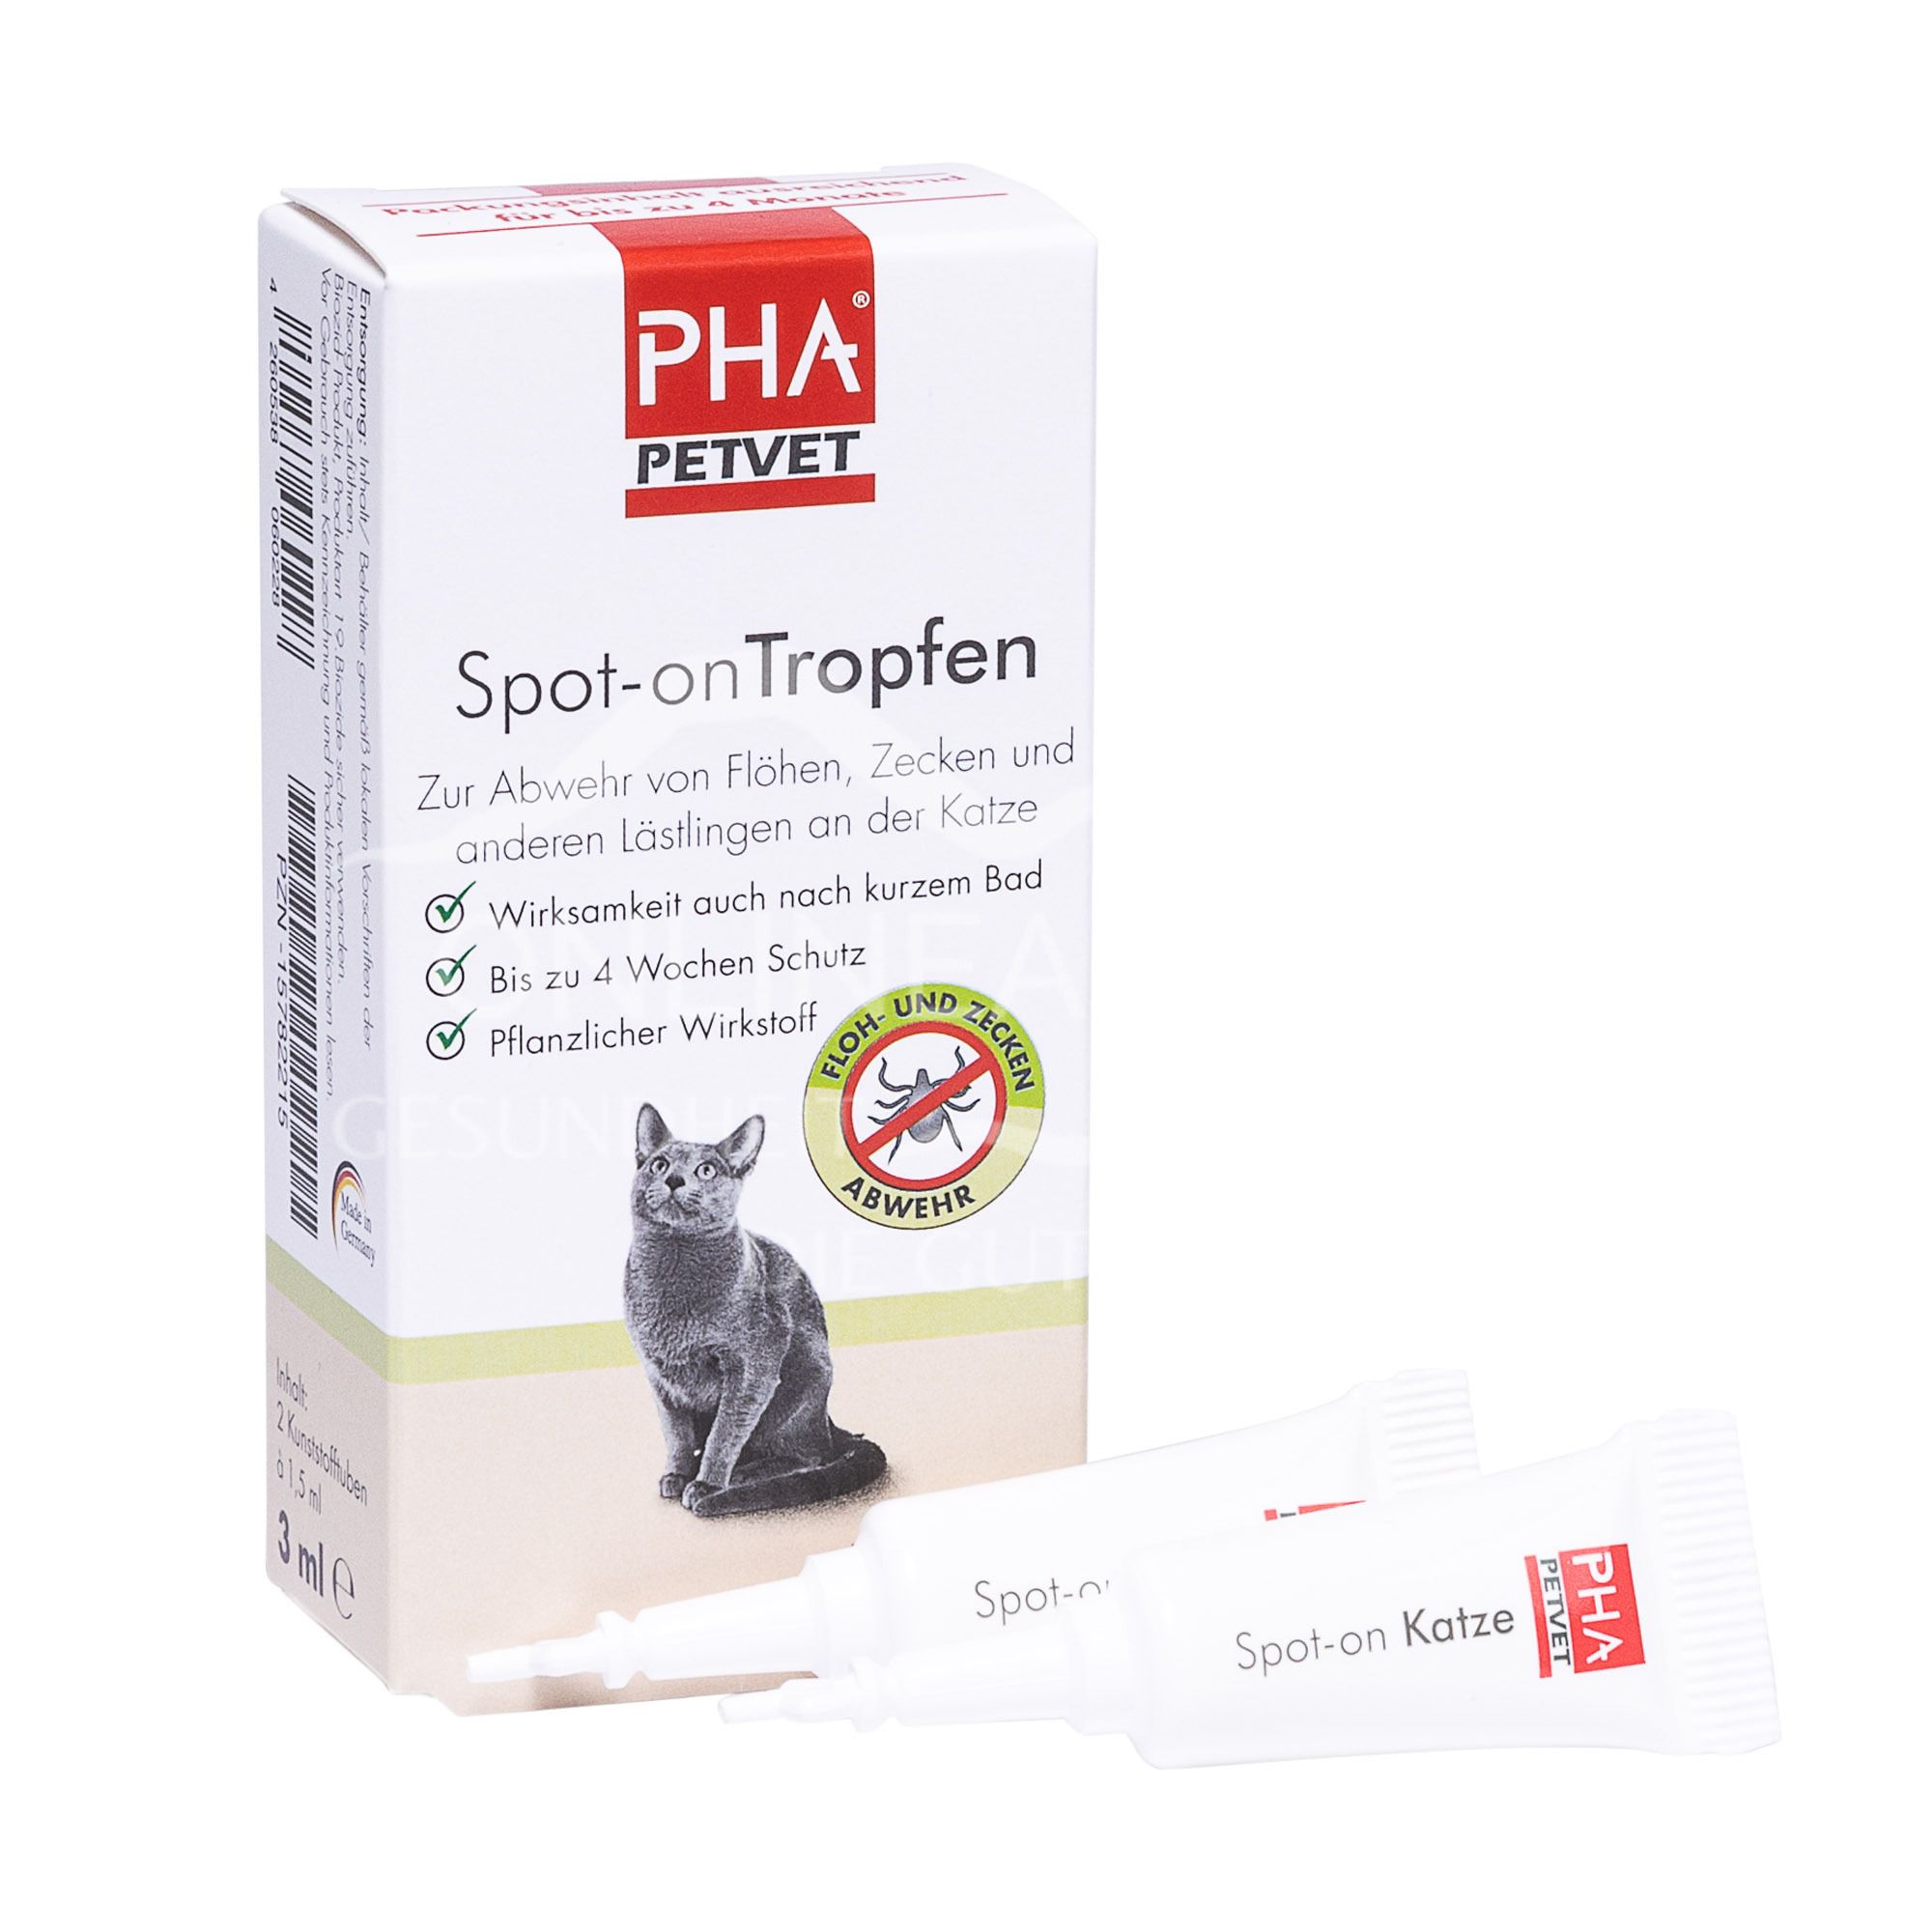 PHA PetVet Spot-on Tropfen für Katzen 1,5 ml